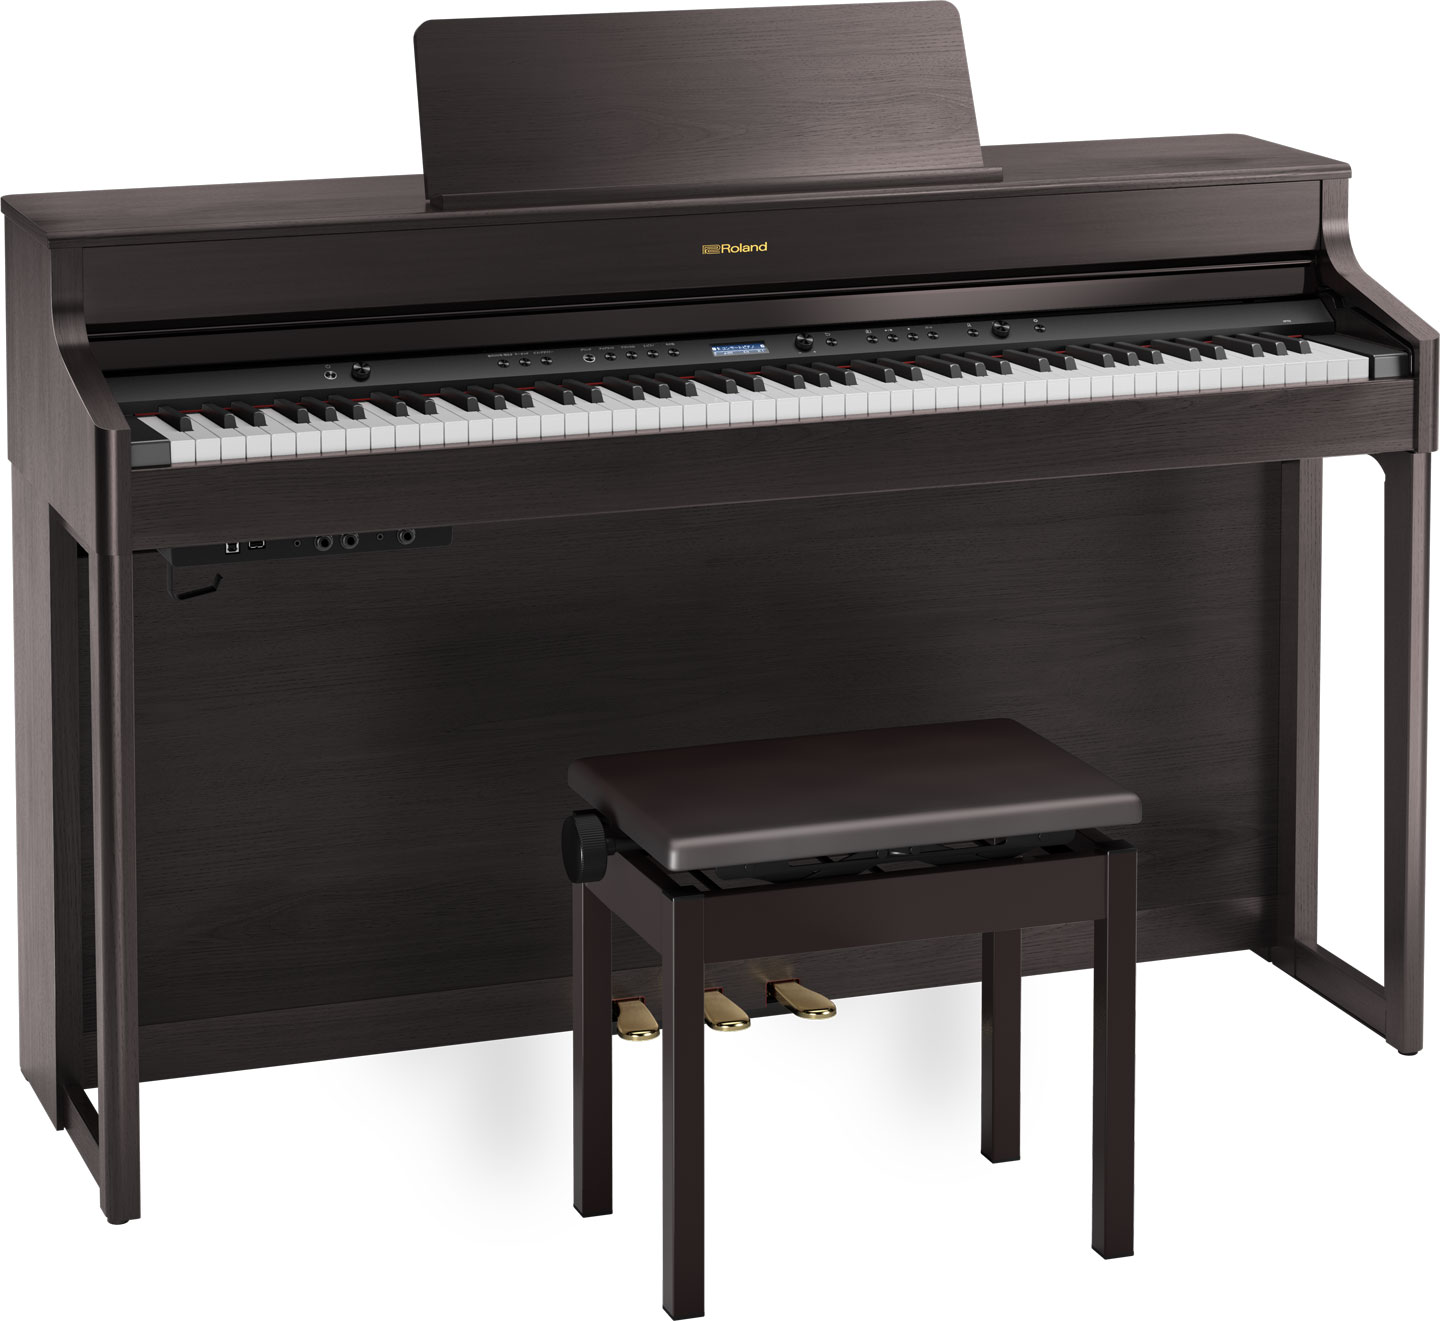 Rolandのホームデジタルピアノ HP700series「HP704/HP702」のご紹介 